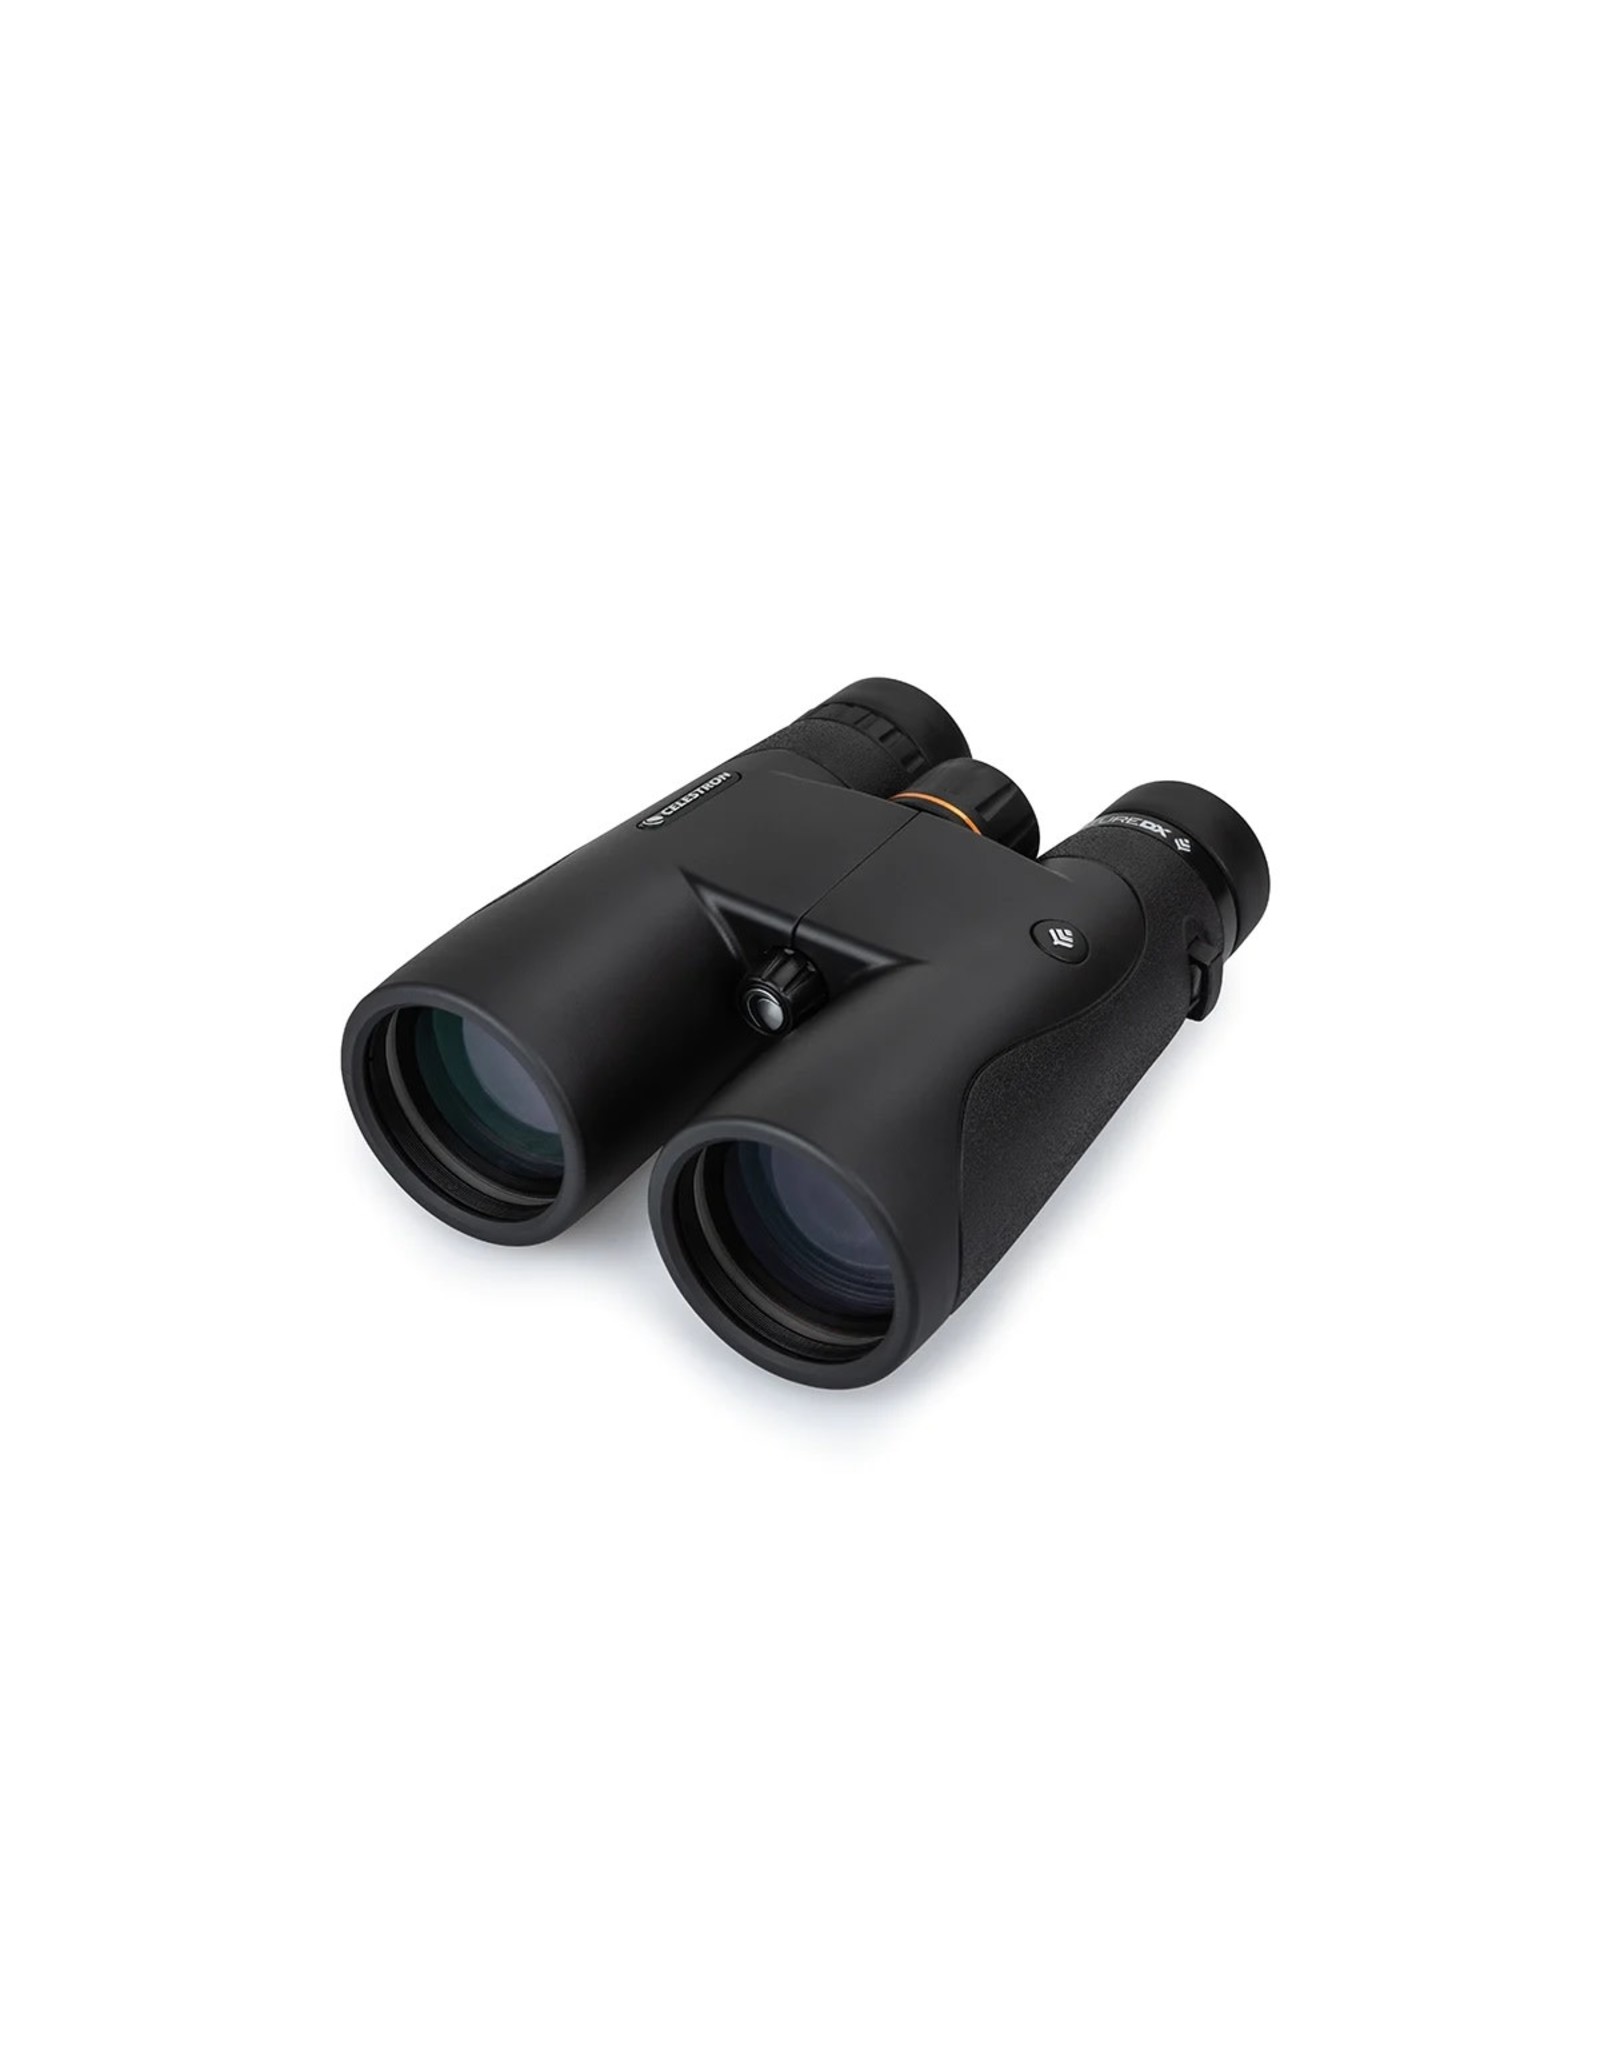 Celestron Celestron Nature DX 12x50 ED Binoculars - BLACK